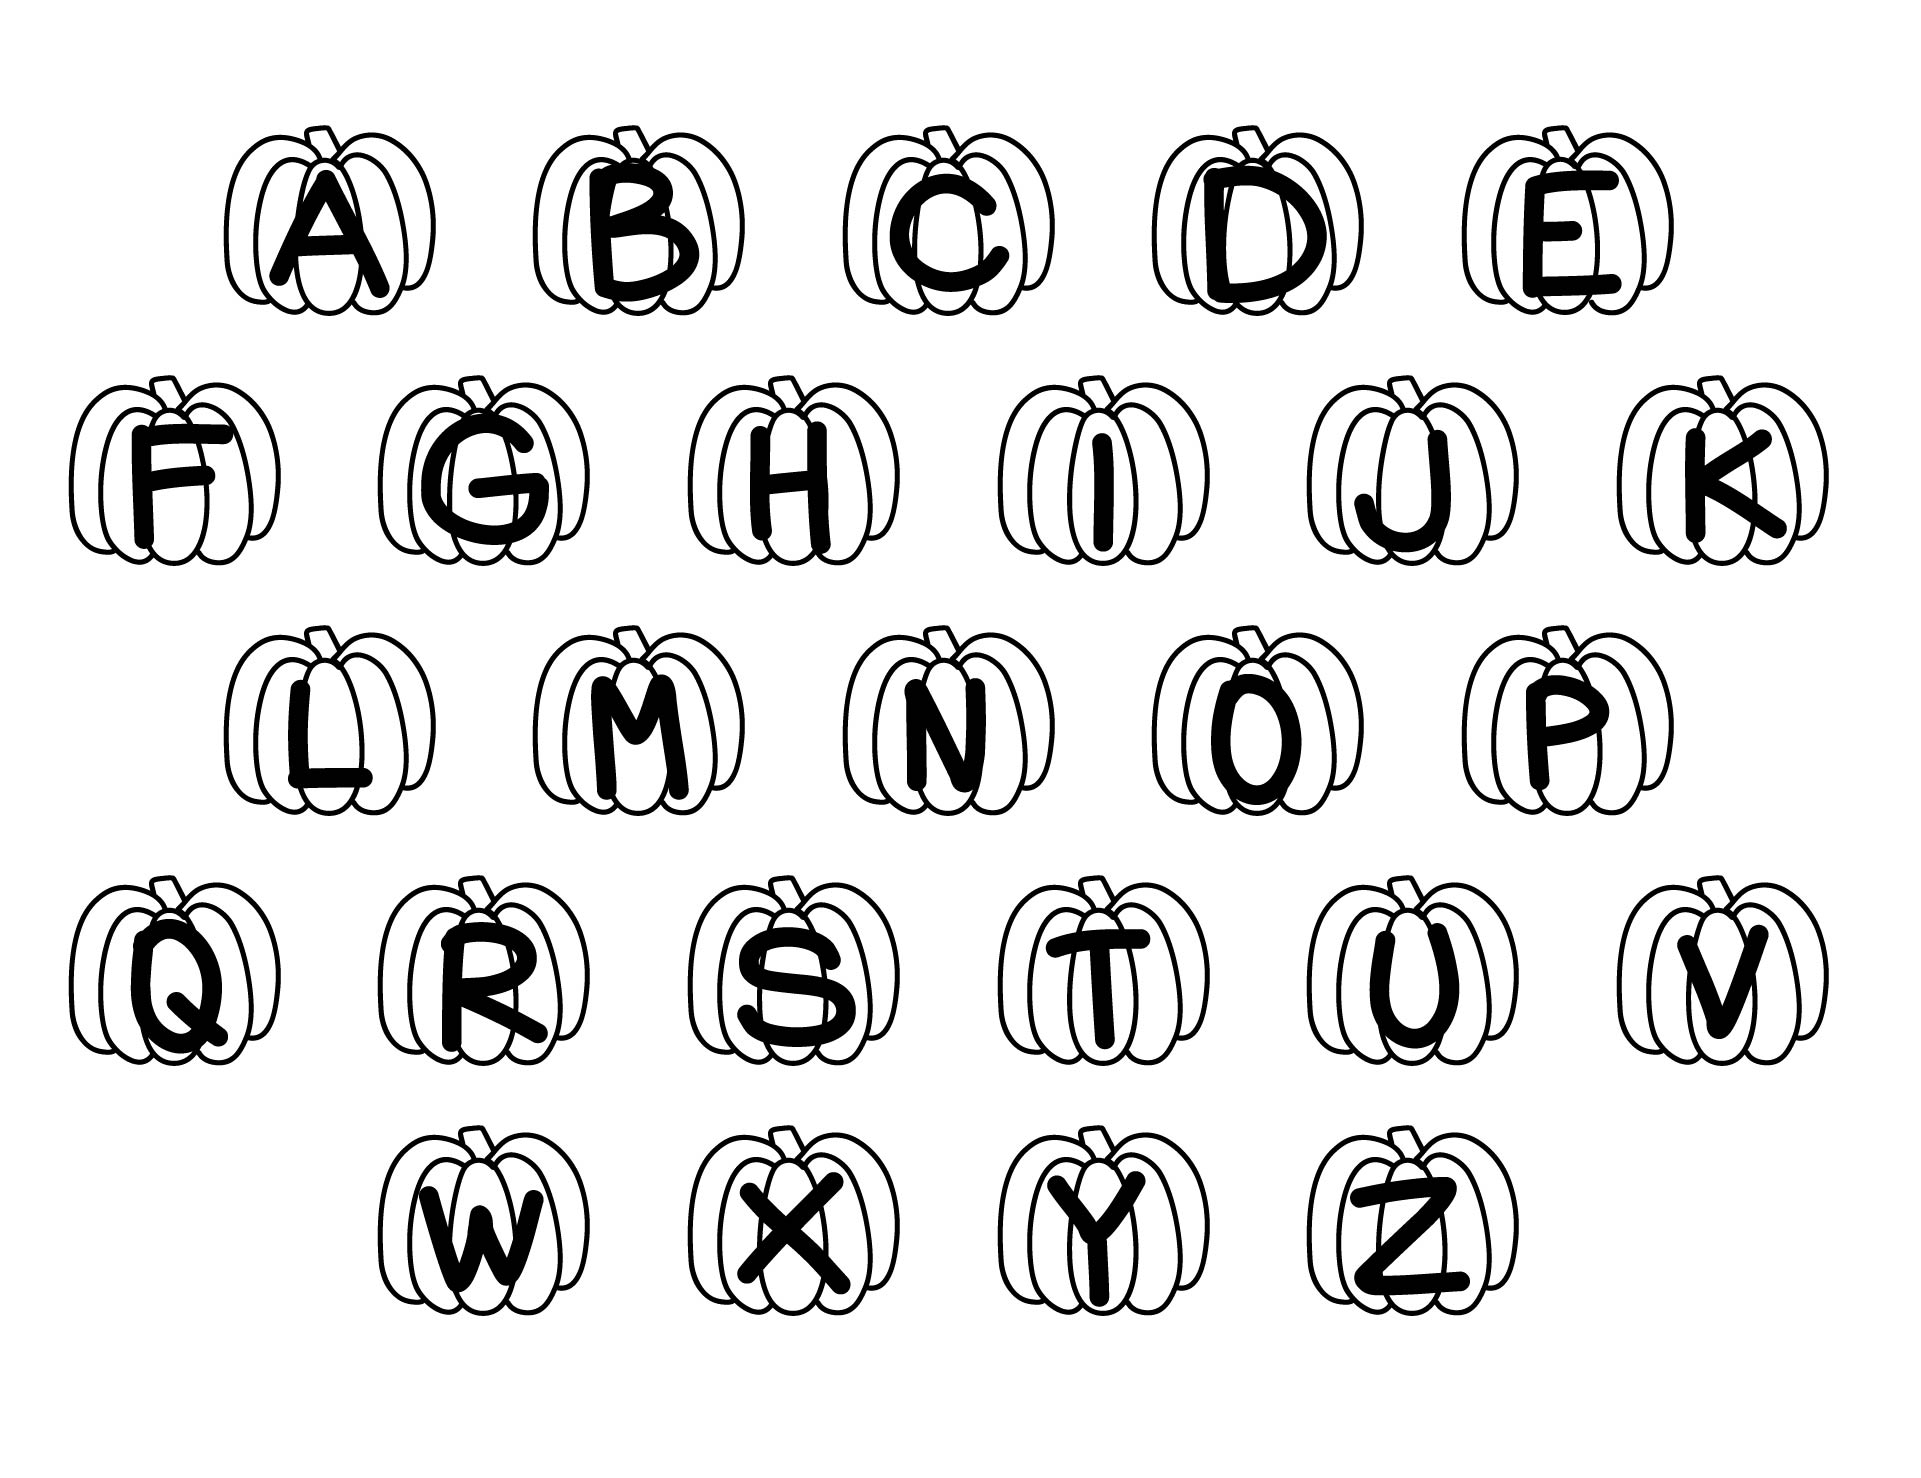 Halloween Preschool Alphabet Coloring Page Printable